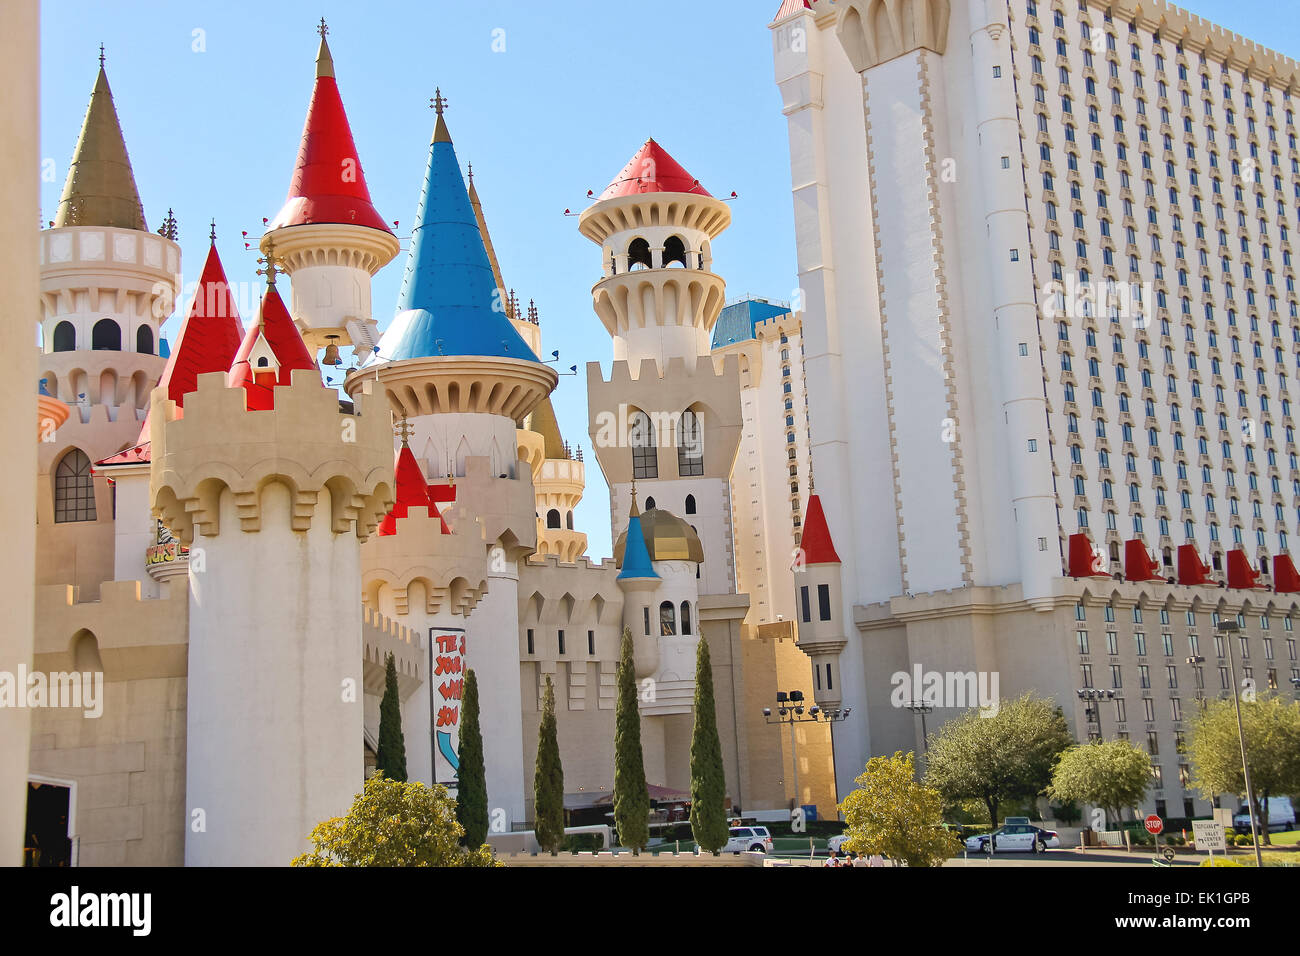 Las Vegas, Nevada, USA - 21. Oktober 2013: Die Excalibur Hotel and Casino in Las Vegas. Excalibur wurde 1990 eröffnet und bietet nun seinen Kunden 100.000 qm Casino mit über 1700 Spielautomaten Stockfoto